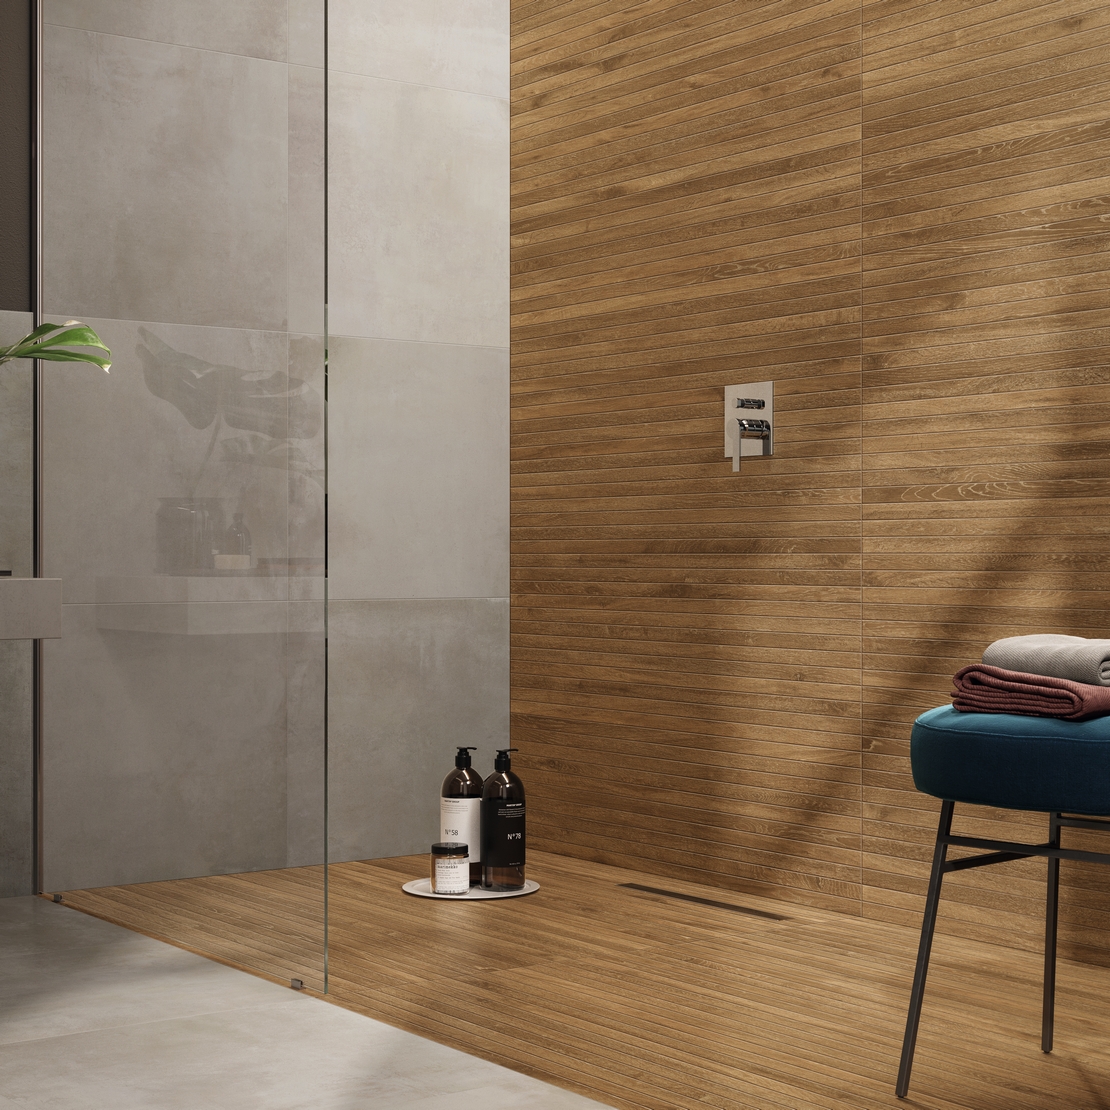 Modernes Badezimmer im industriellen Stil mit Dusche und luxuriöser grauer Zement-und Holzoptik - Inspirationen Iperceramica